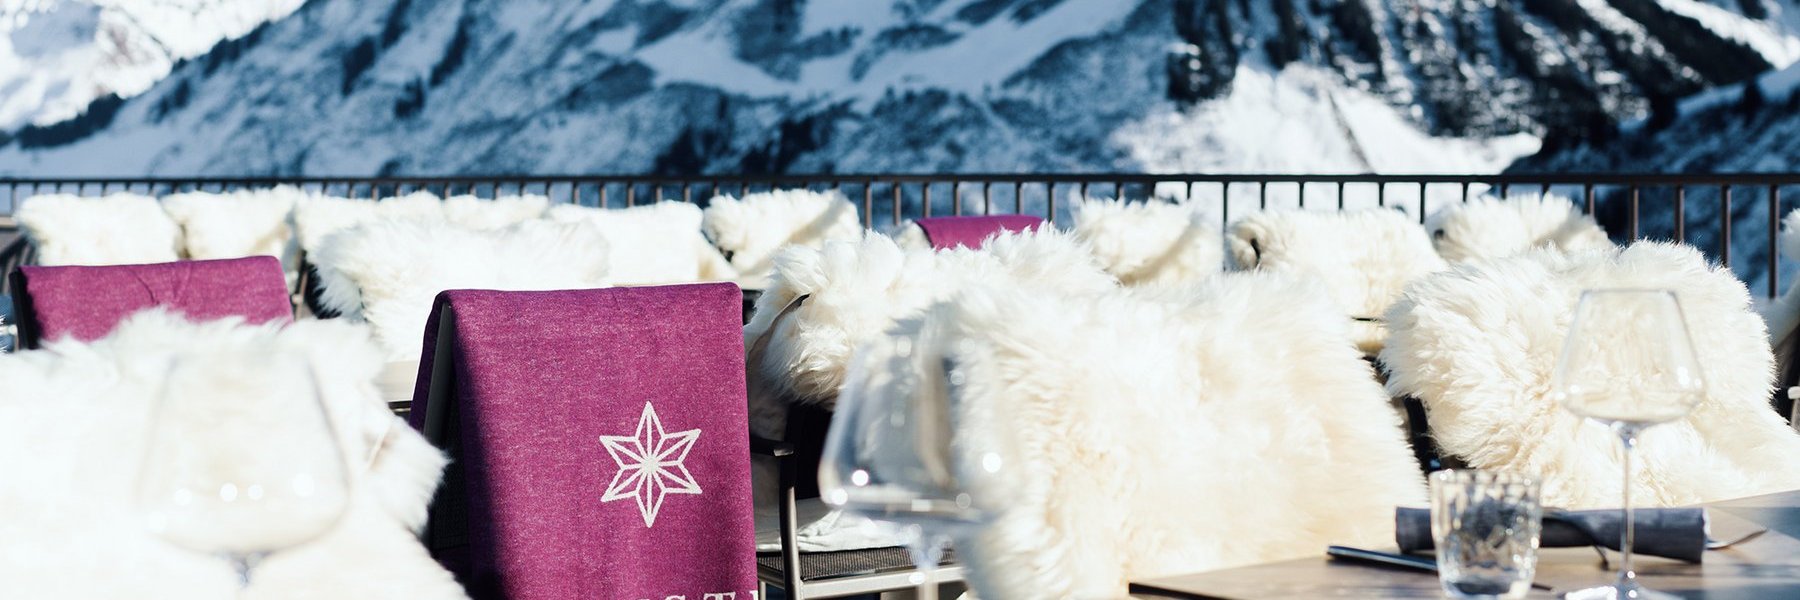 Tische und fellbedeckte Stühle des Restaurants Alpenstern mit Blick auf die verschneiten Berge